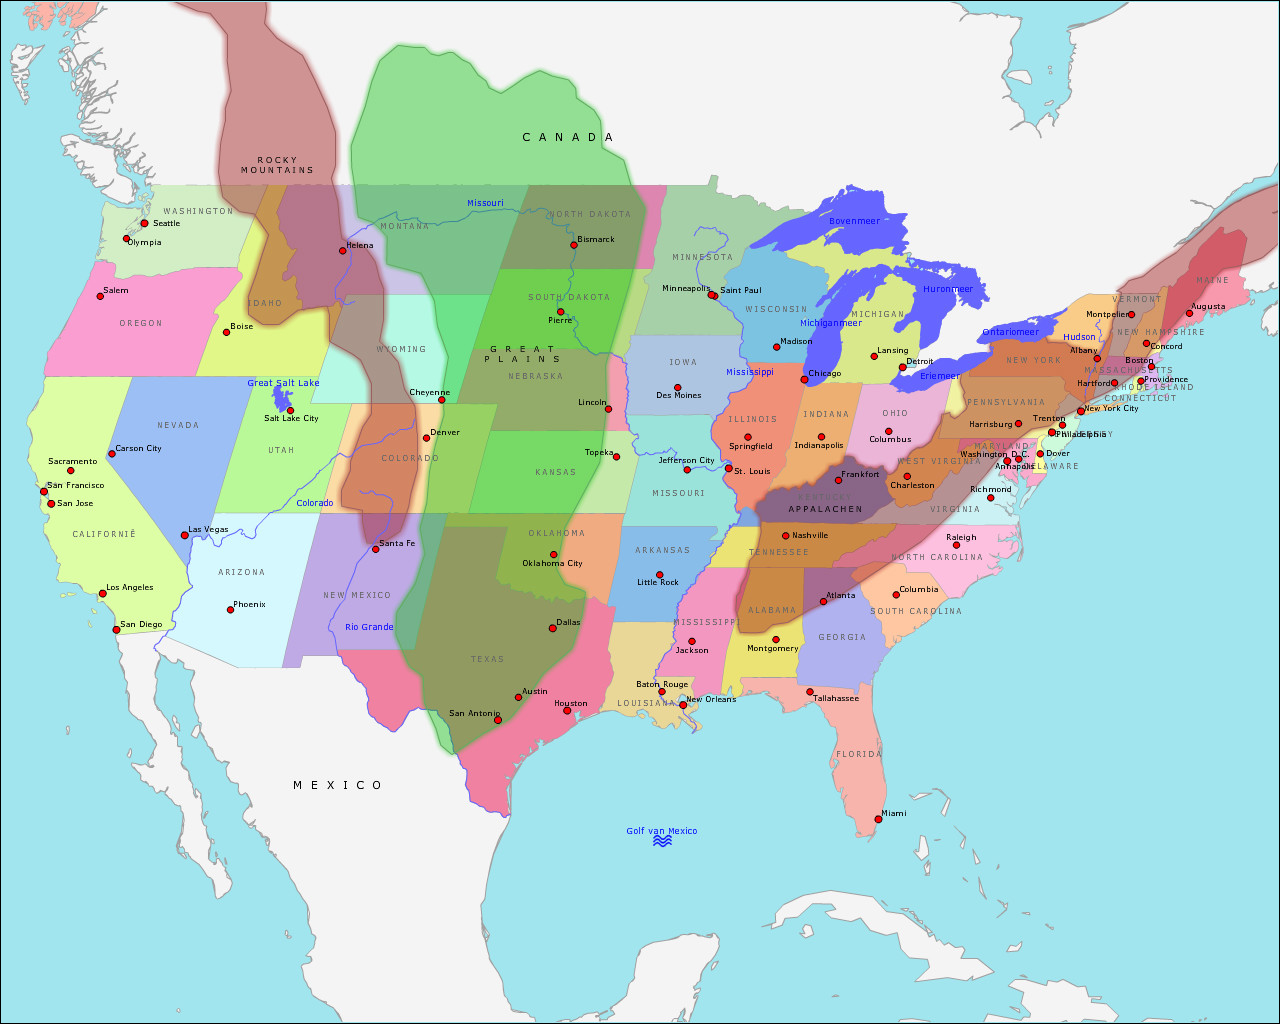 Loodgieter Gaan Maak een bed Topografie De Verenigde Staten van Amerika (uitgebreid) | www.topomania.net